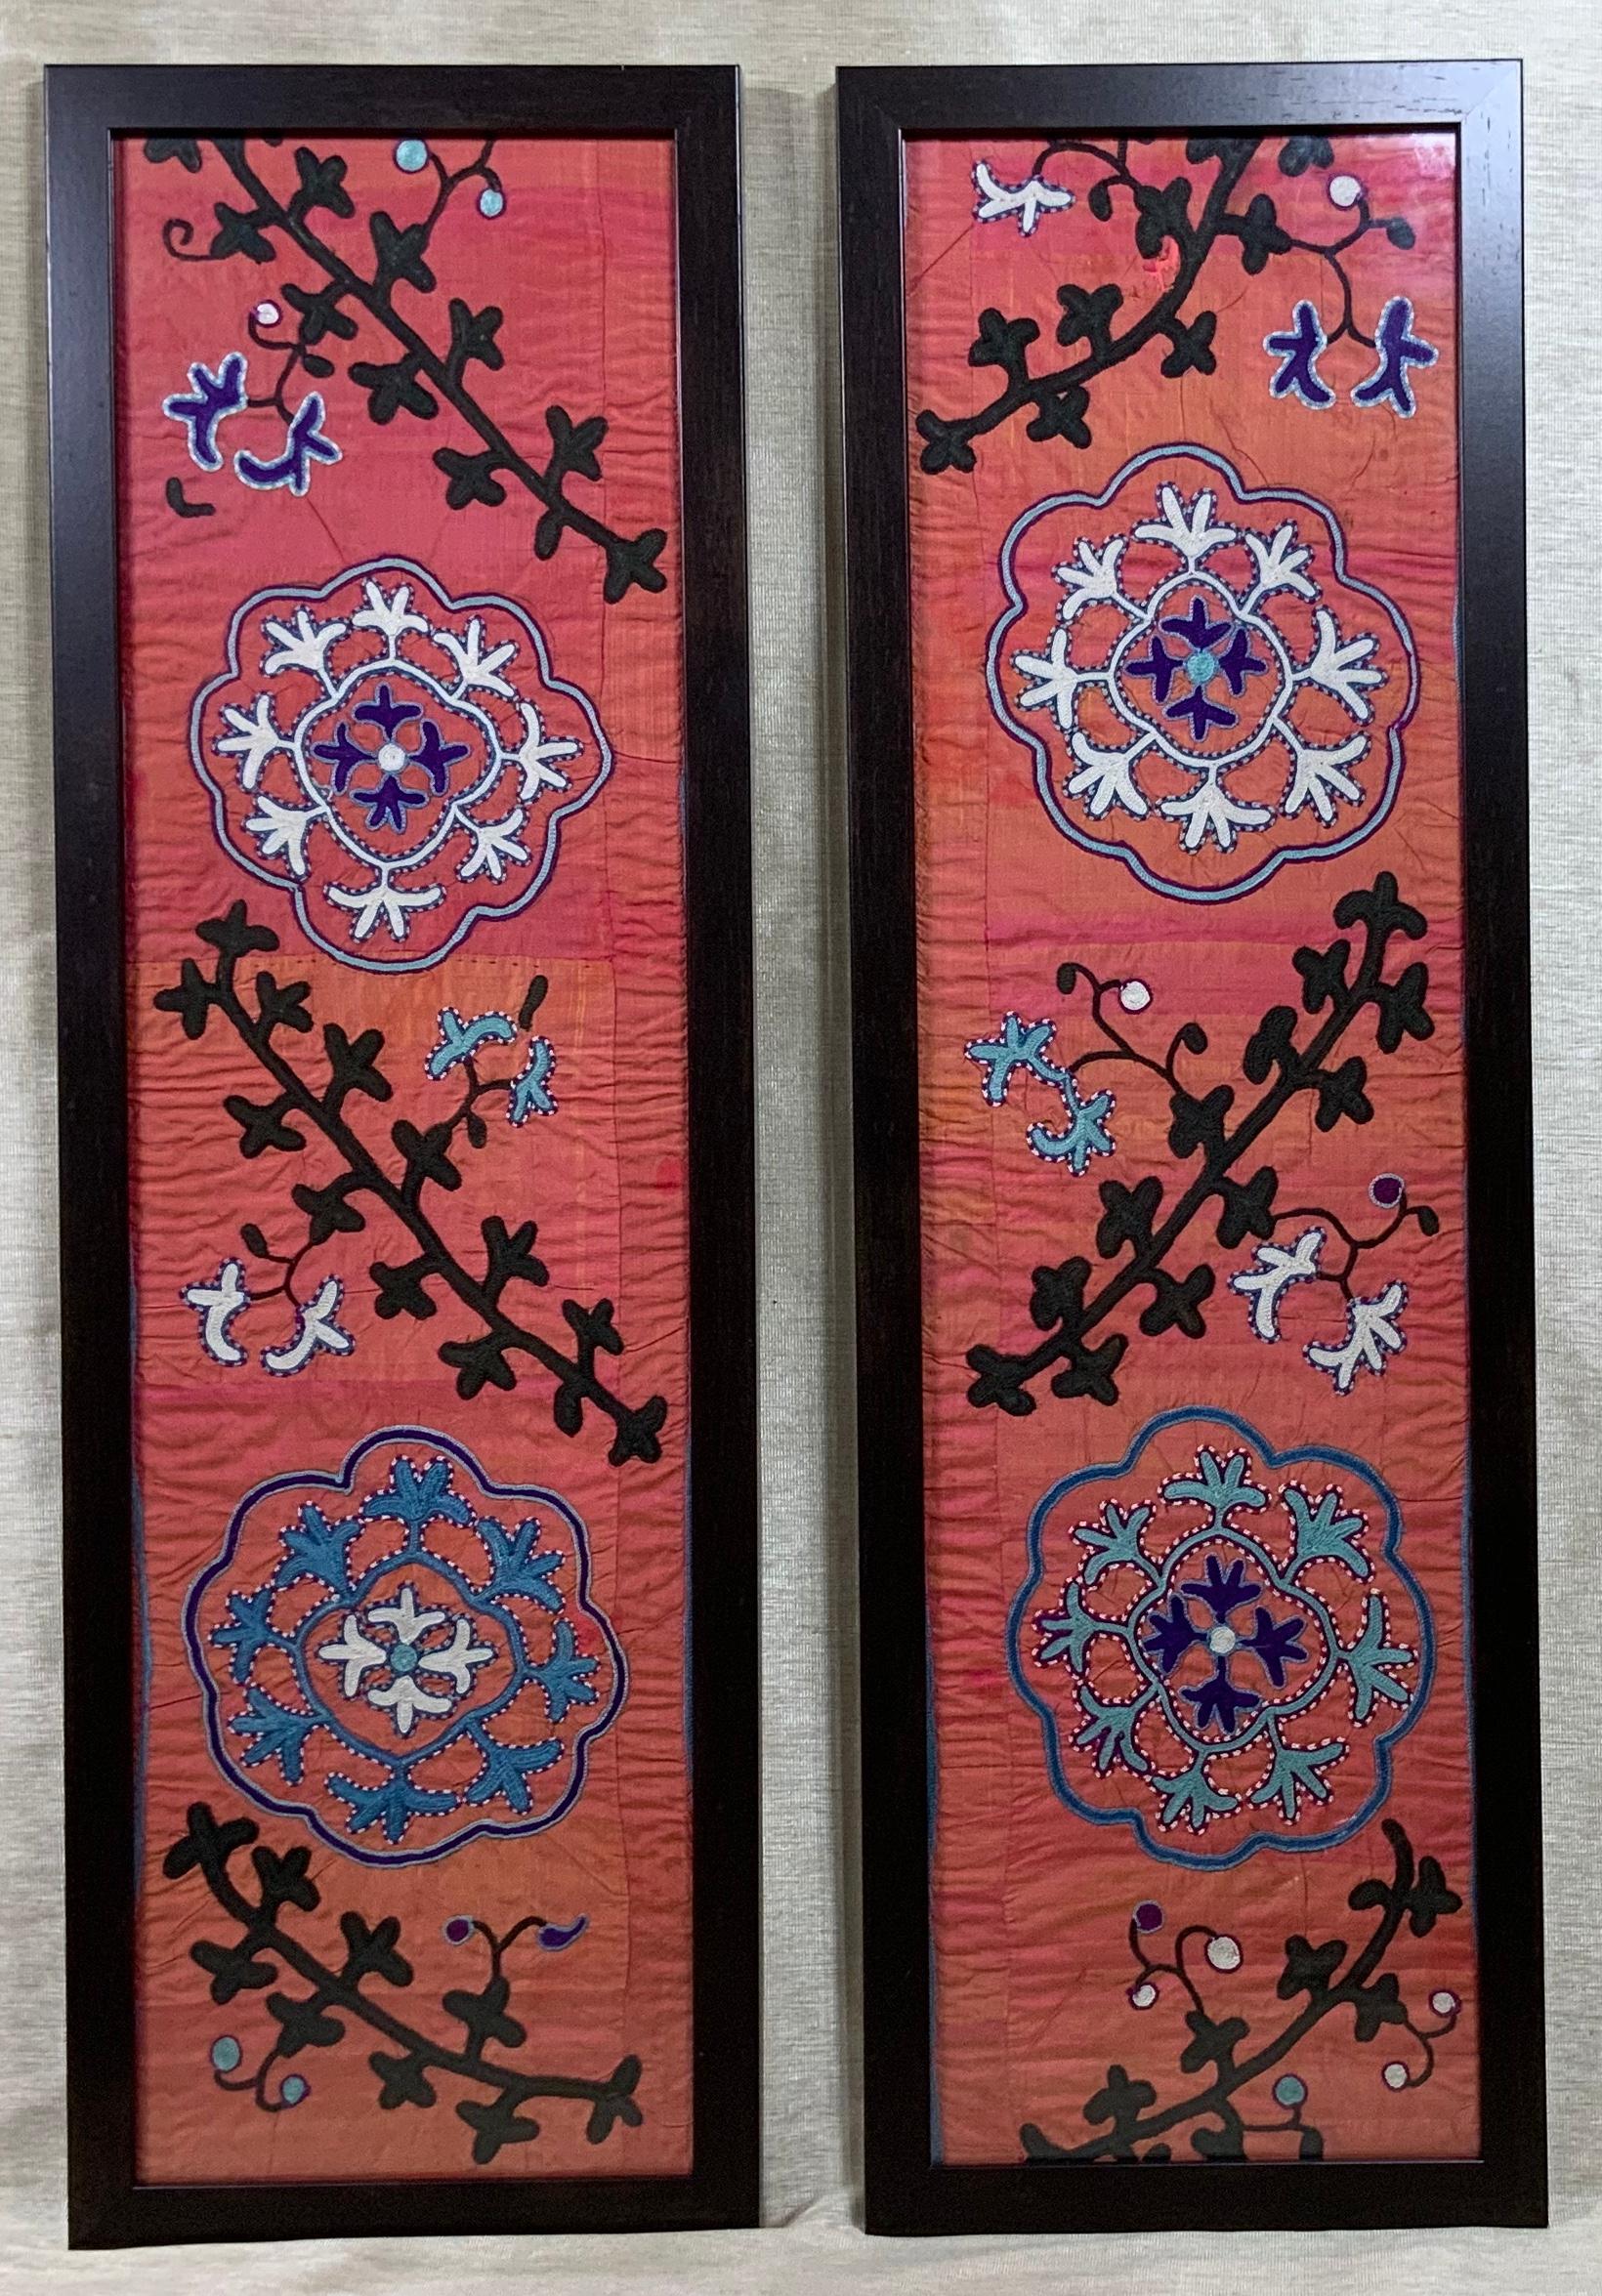 Schönes Paar Seide Handstickerei Suzani Fragment, professionell auf Seide montiert
rückenlehne von Hand zusammengenäht, mit Frontglas gerahmt, um ein einzigartiges Kunstobjekt zum Aufhängen zu schaffen. Außergewöhnliche Ranken und kreisförmigen